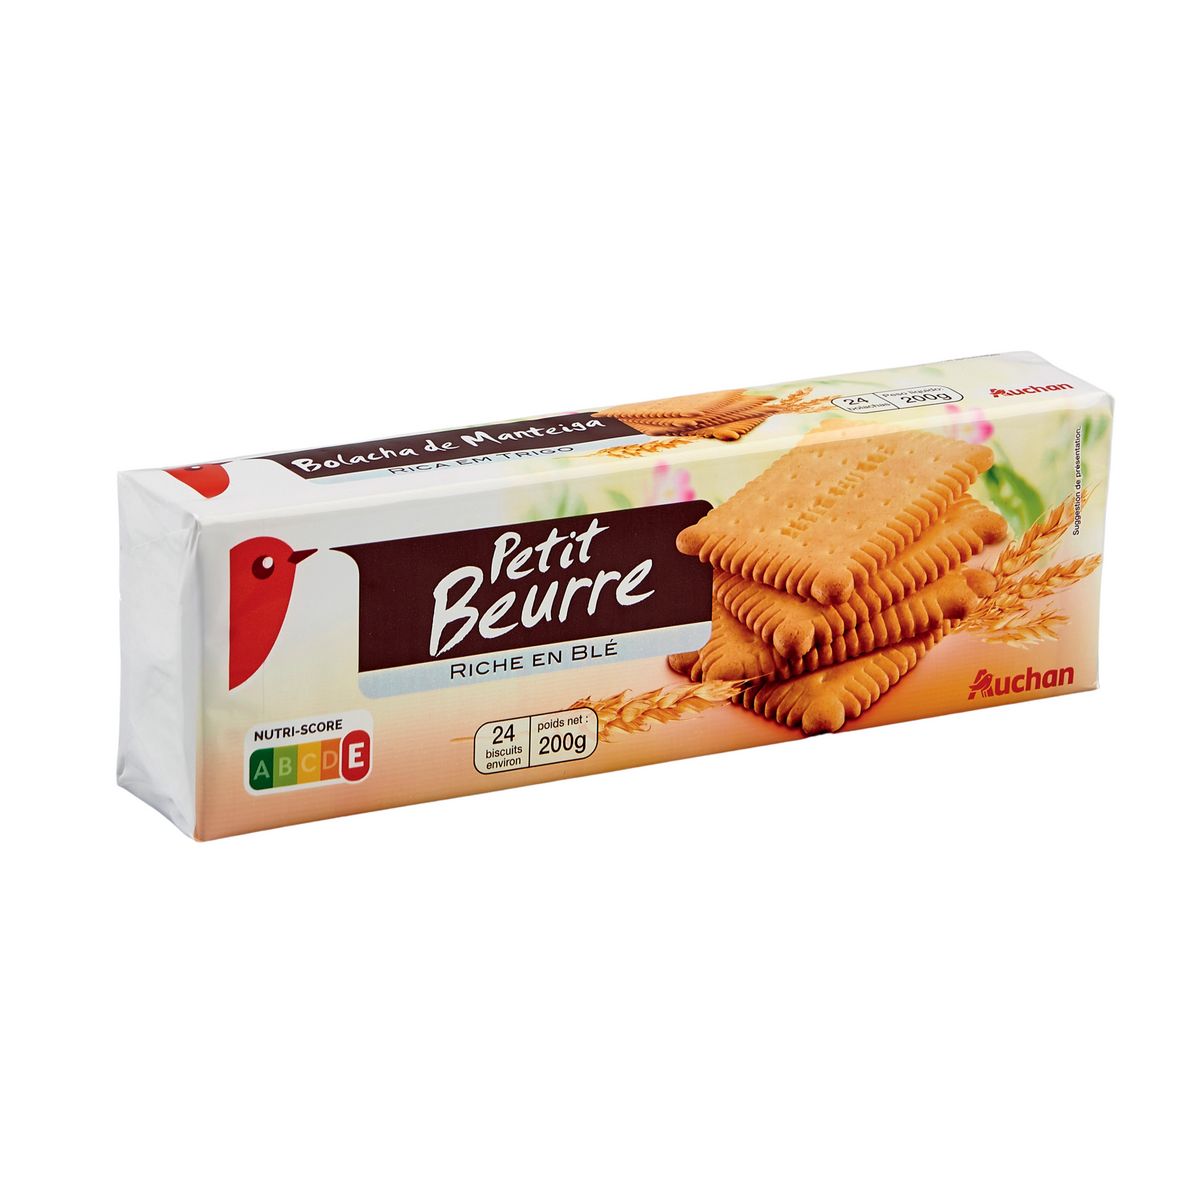 AUCHAN Biscuits petit beurre riches en blé 24 biscuits 200g